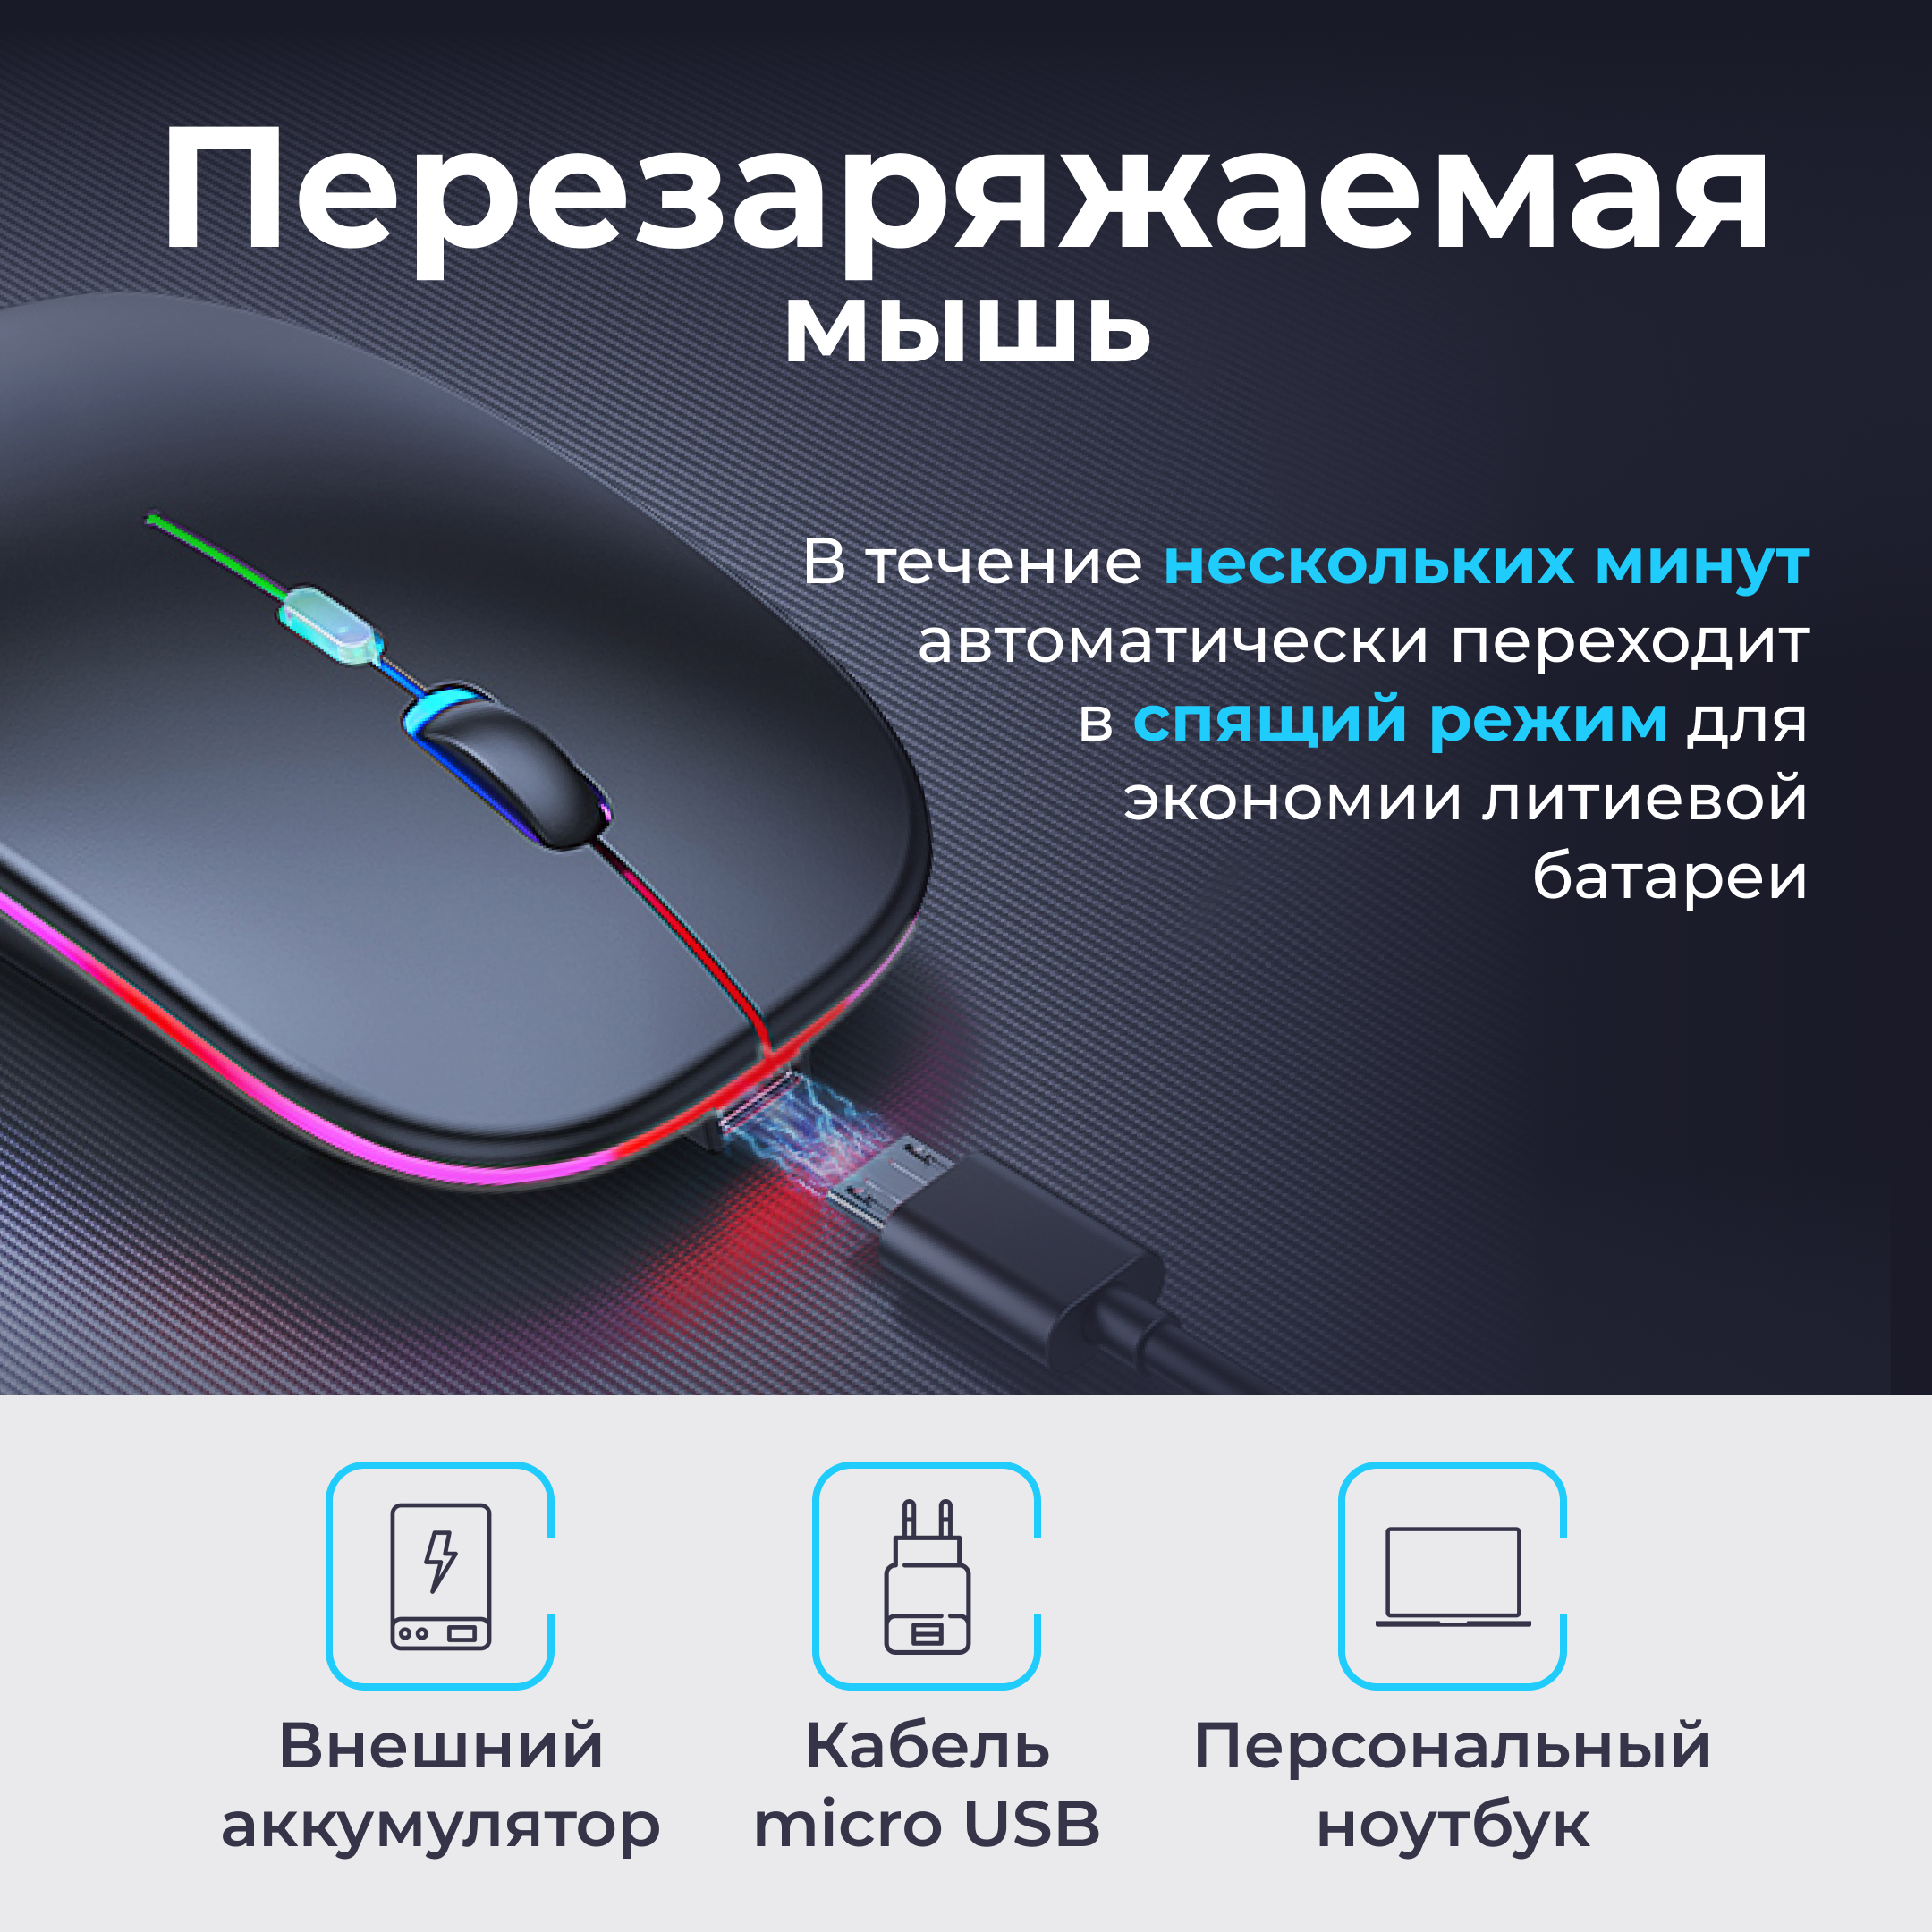 Мышь беспроводная / Бесшумная блютуз компьютерная мышь с подсветкой RGB / Bluetooth / Цвет чёрный